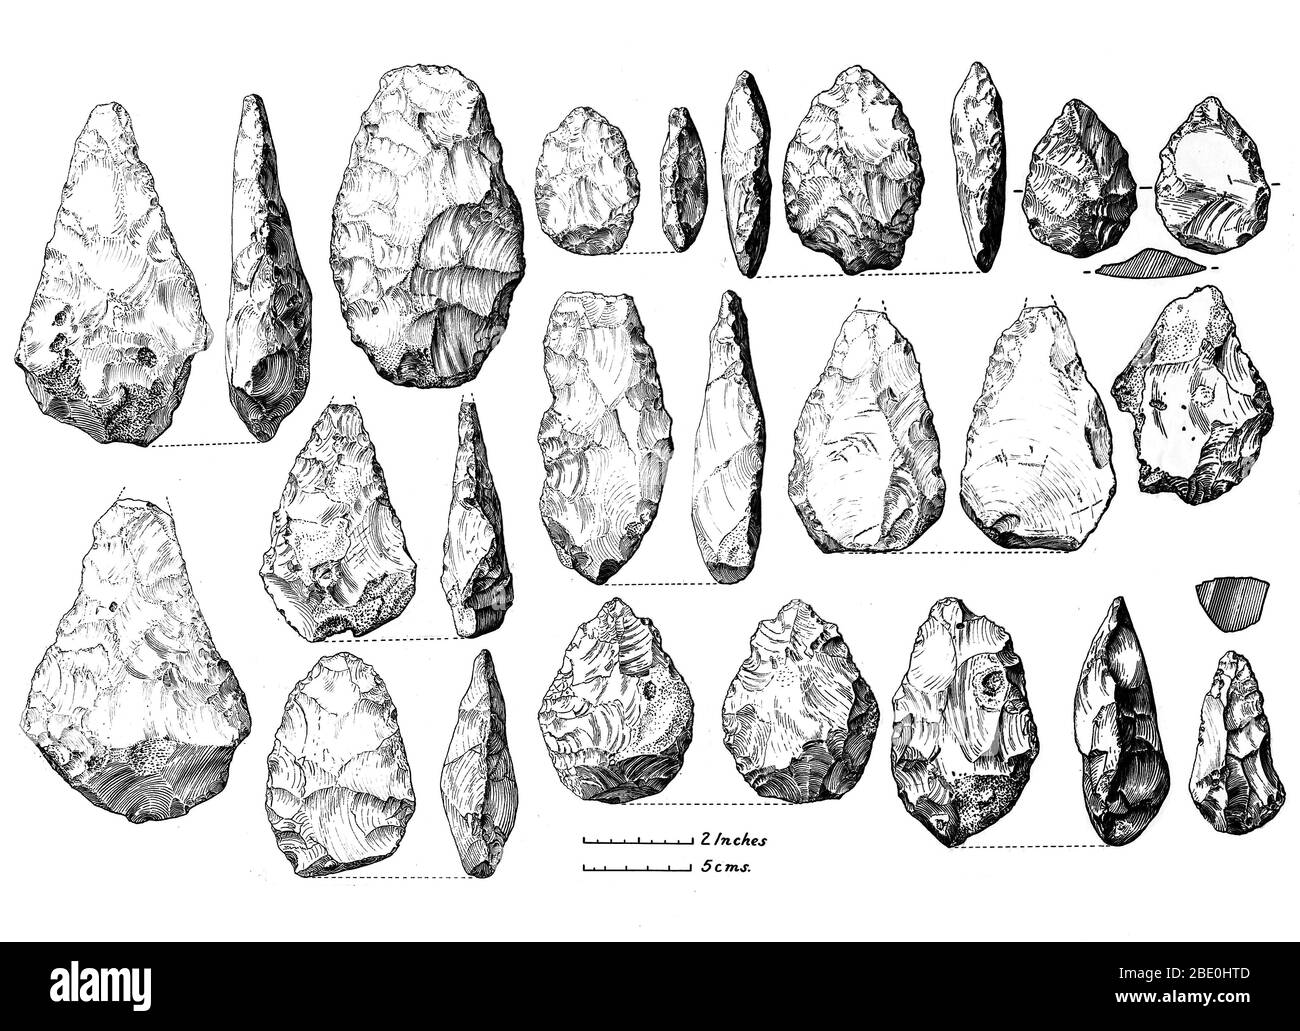 Outils bifacaciaux d'Acheuléan (axes de la main) de Bunham Beeches, Bucks. Terrasse de Upper Boyn Hill. Acheuléan est une industrie archéologique de la fabrication d'outils en pierre caractérisée par des axes de main ovales et en forme de poire distincts associés aux premiers humains. Des outils d'Acheuléan ont été produits durant l'ère du Paléolithique inférieur. Le Paléolithique inférieur est la première subdivision du Paléolithique ou de la vieille pierre. Il s'étend à partir d'environ 2,5 millions d'années auparavant, lorsque la première preuve de l'artisanat et de l'utilisation d'outils en pierre par les hominidés apparaît dans le dossier archéologique actuel, jusqu'à environ 300 000 ans plus tôt. Banque D'Images